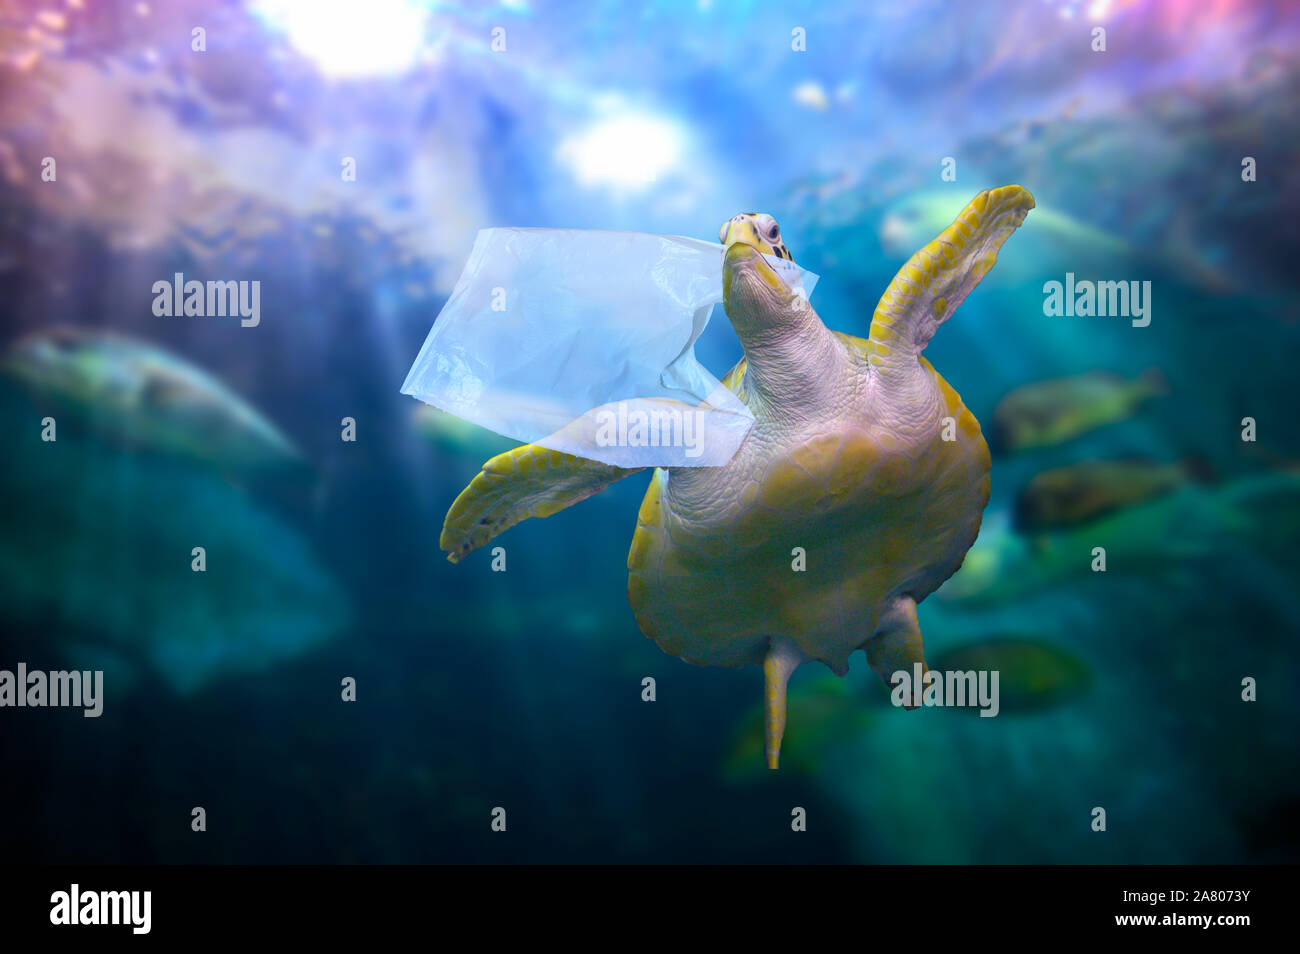 Océan de plastique Sacs en plastique de l'alimentation sont des tortues sous le bleu de la mer. Concepts de la conservation de l'environnement et de ne pas jeter de déchets dans la mer Banque D'Images